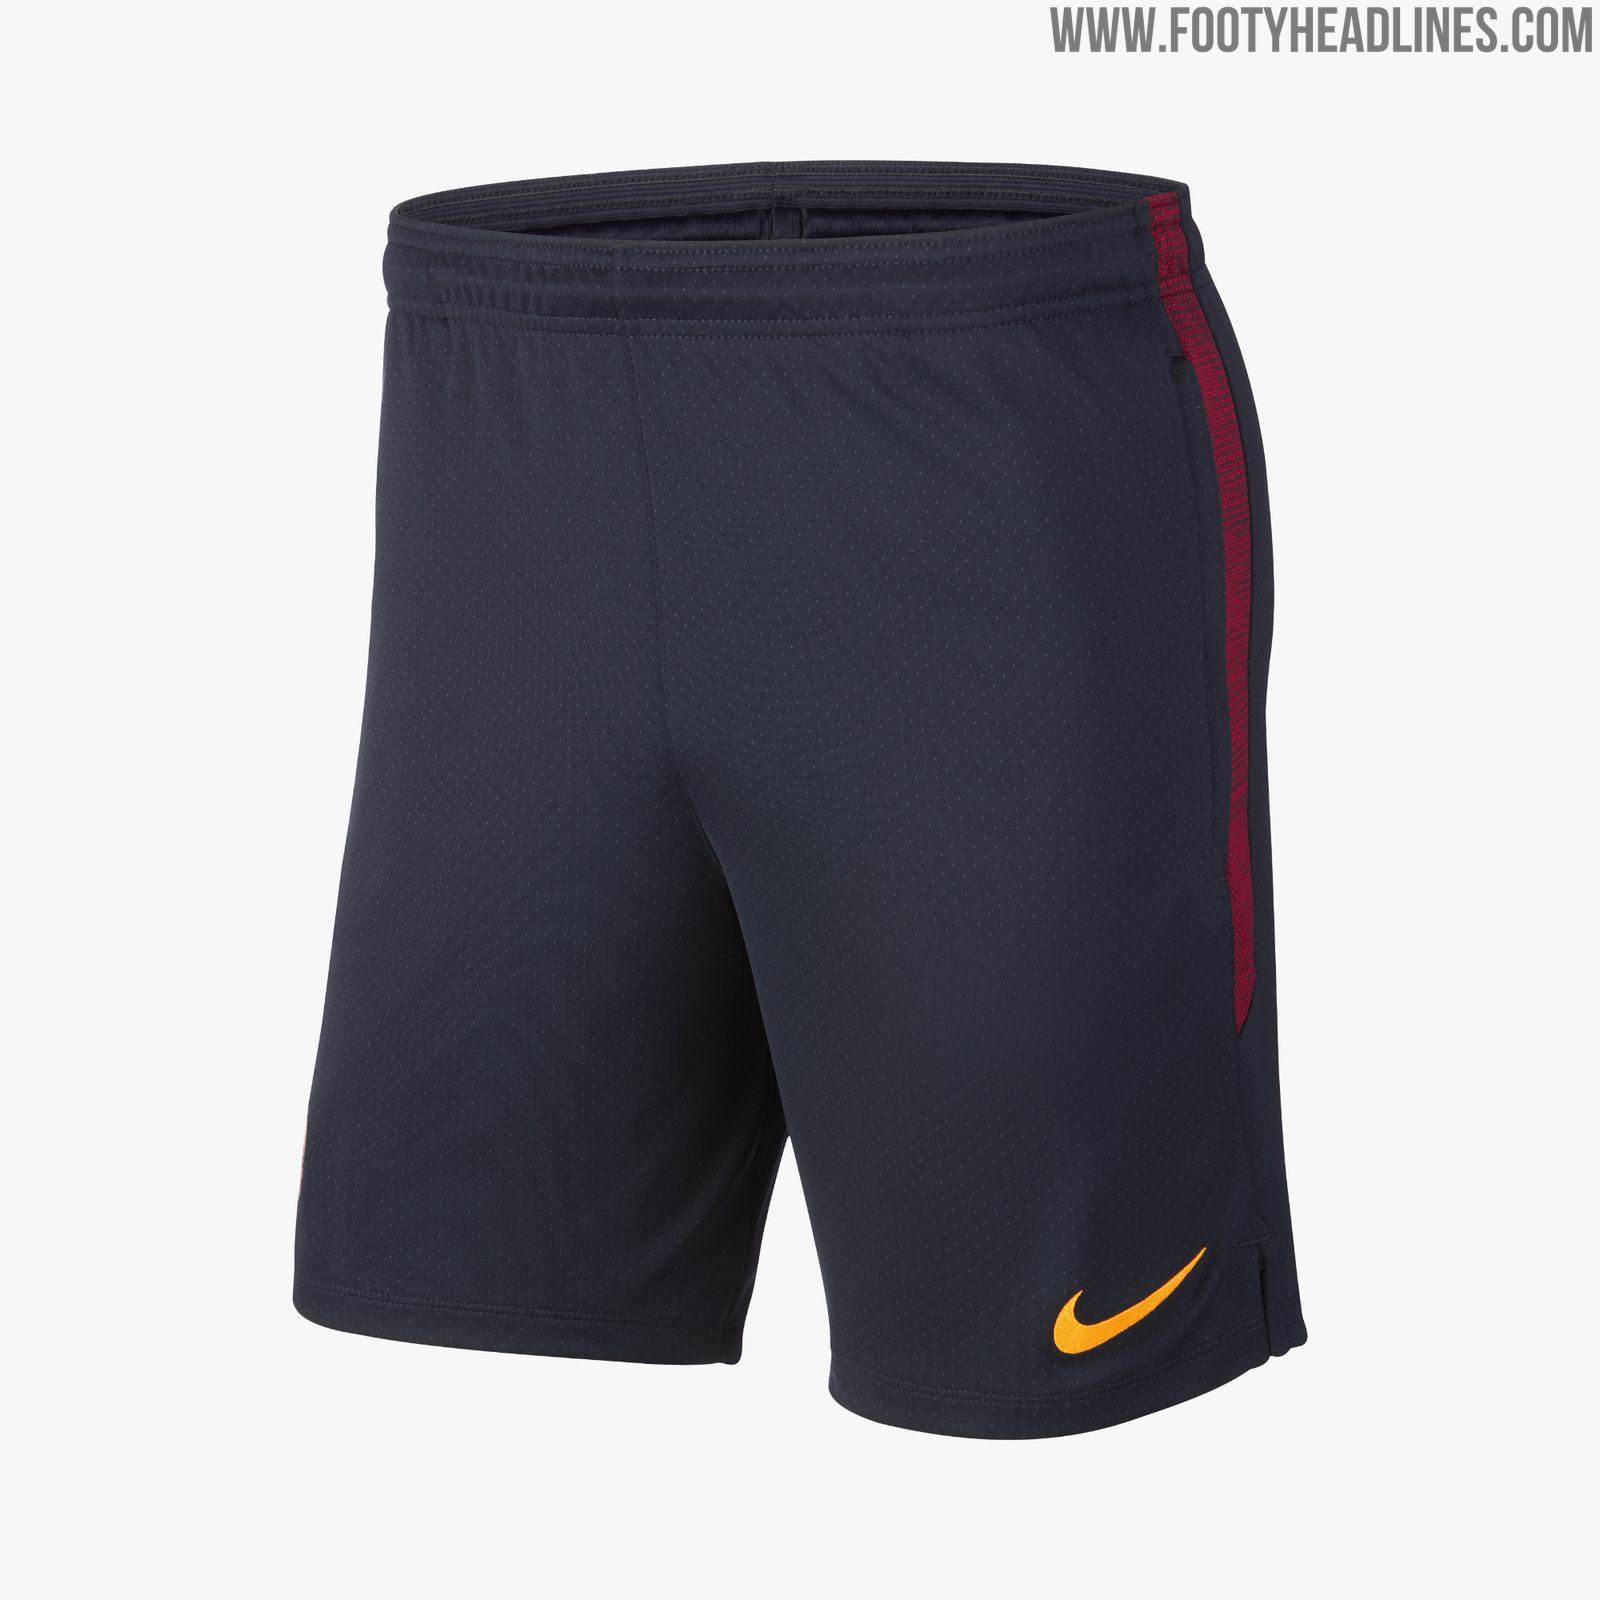 Nike Roma 19-20 Training Kit Released - Footy Headlines